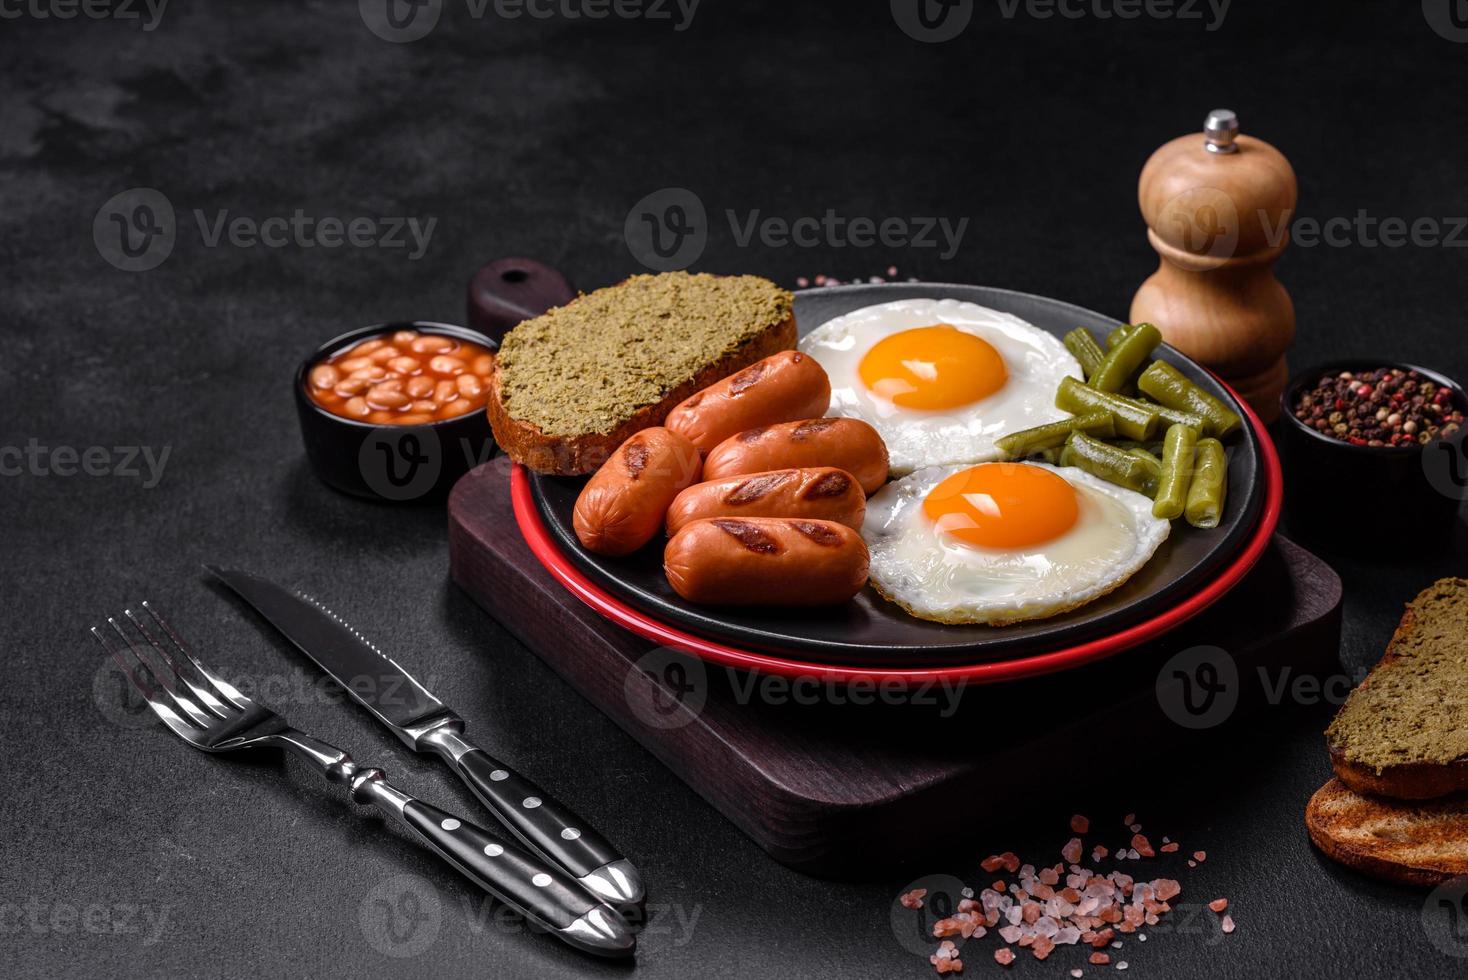 savoureux petit-déjeuner anglais composé d'œufs au plat, de haricots, d'asperges, de saucisses aux épices et d'herbes photo